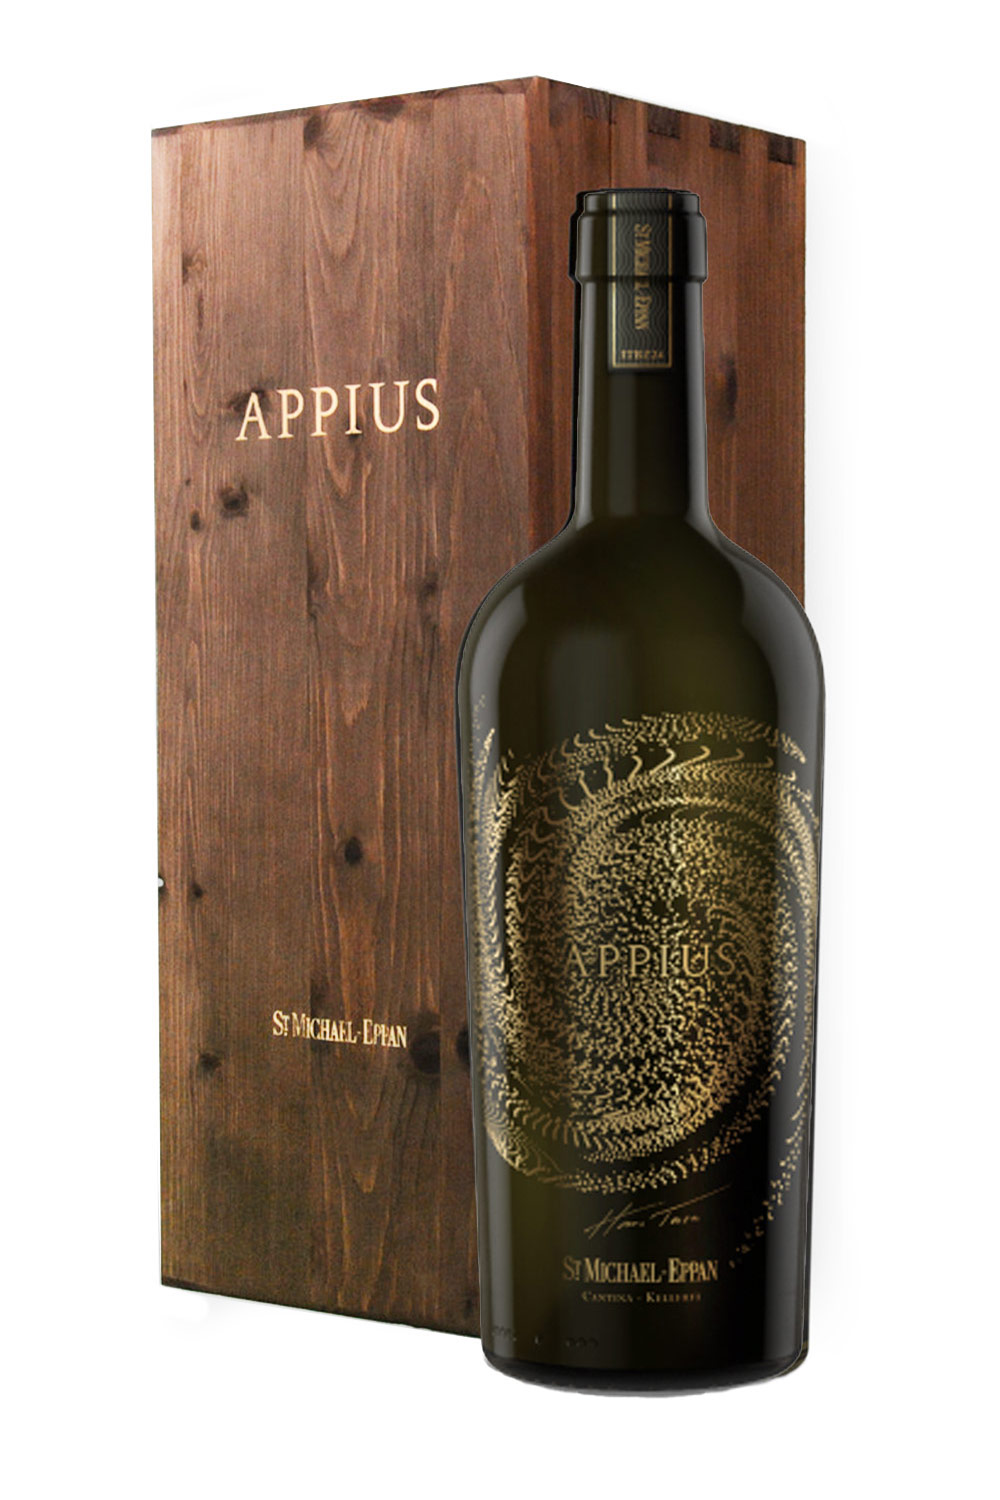 St. Michael-Eppan Appius DOC 2018 mit Holzkiste | Online kaufen bei Senti  Vini - Weine aus Italien